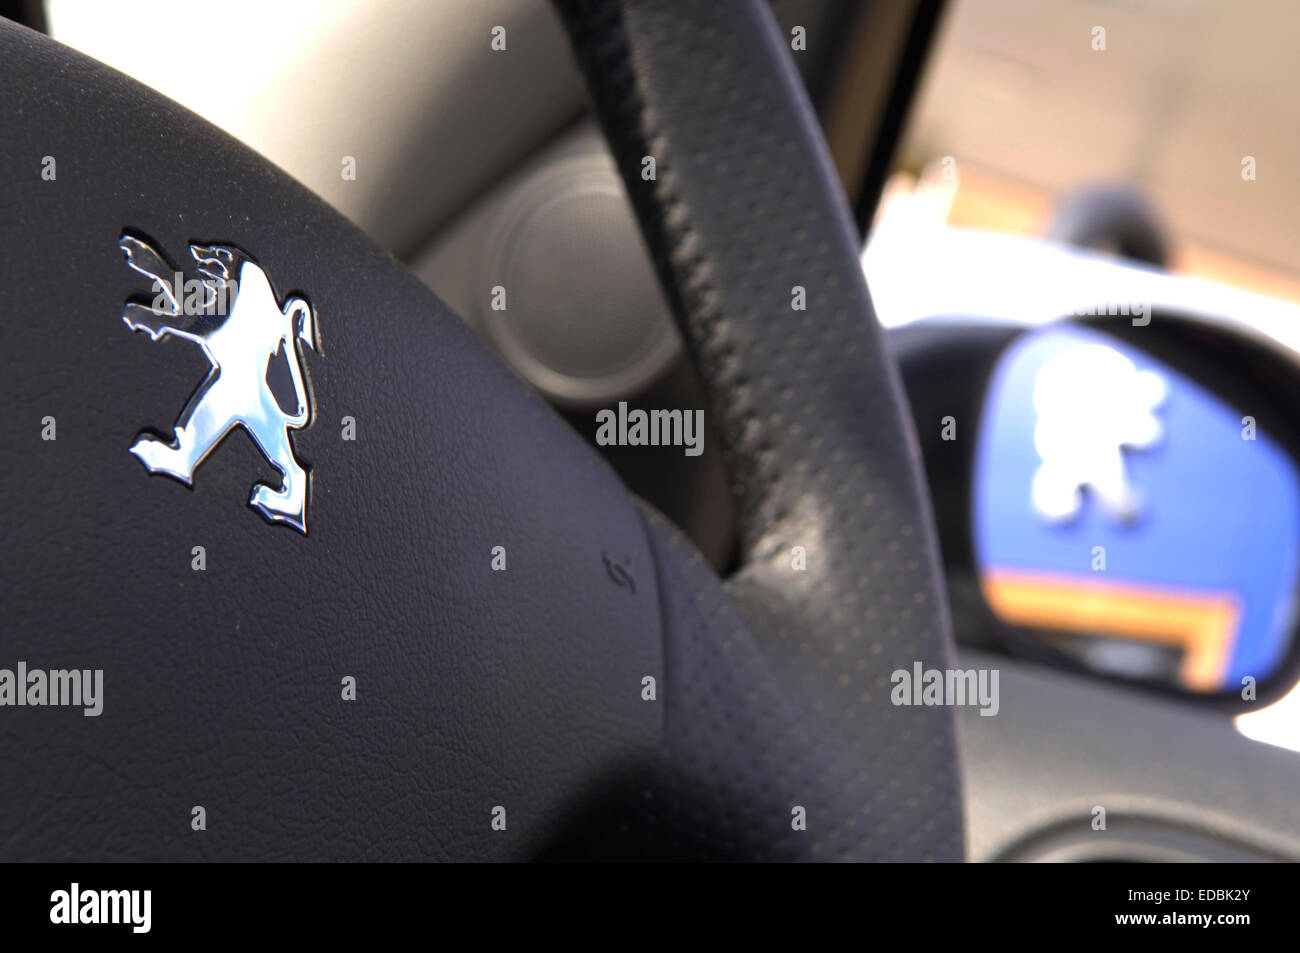 Le volant de marque à l'intérieur d'une voiture Peugeot. Banque D'Images